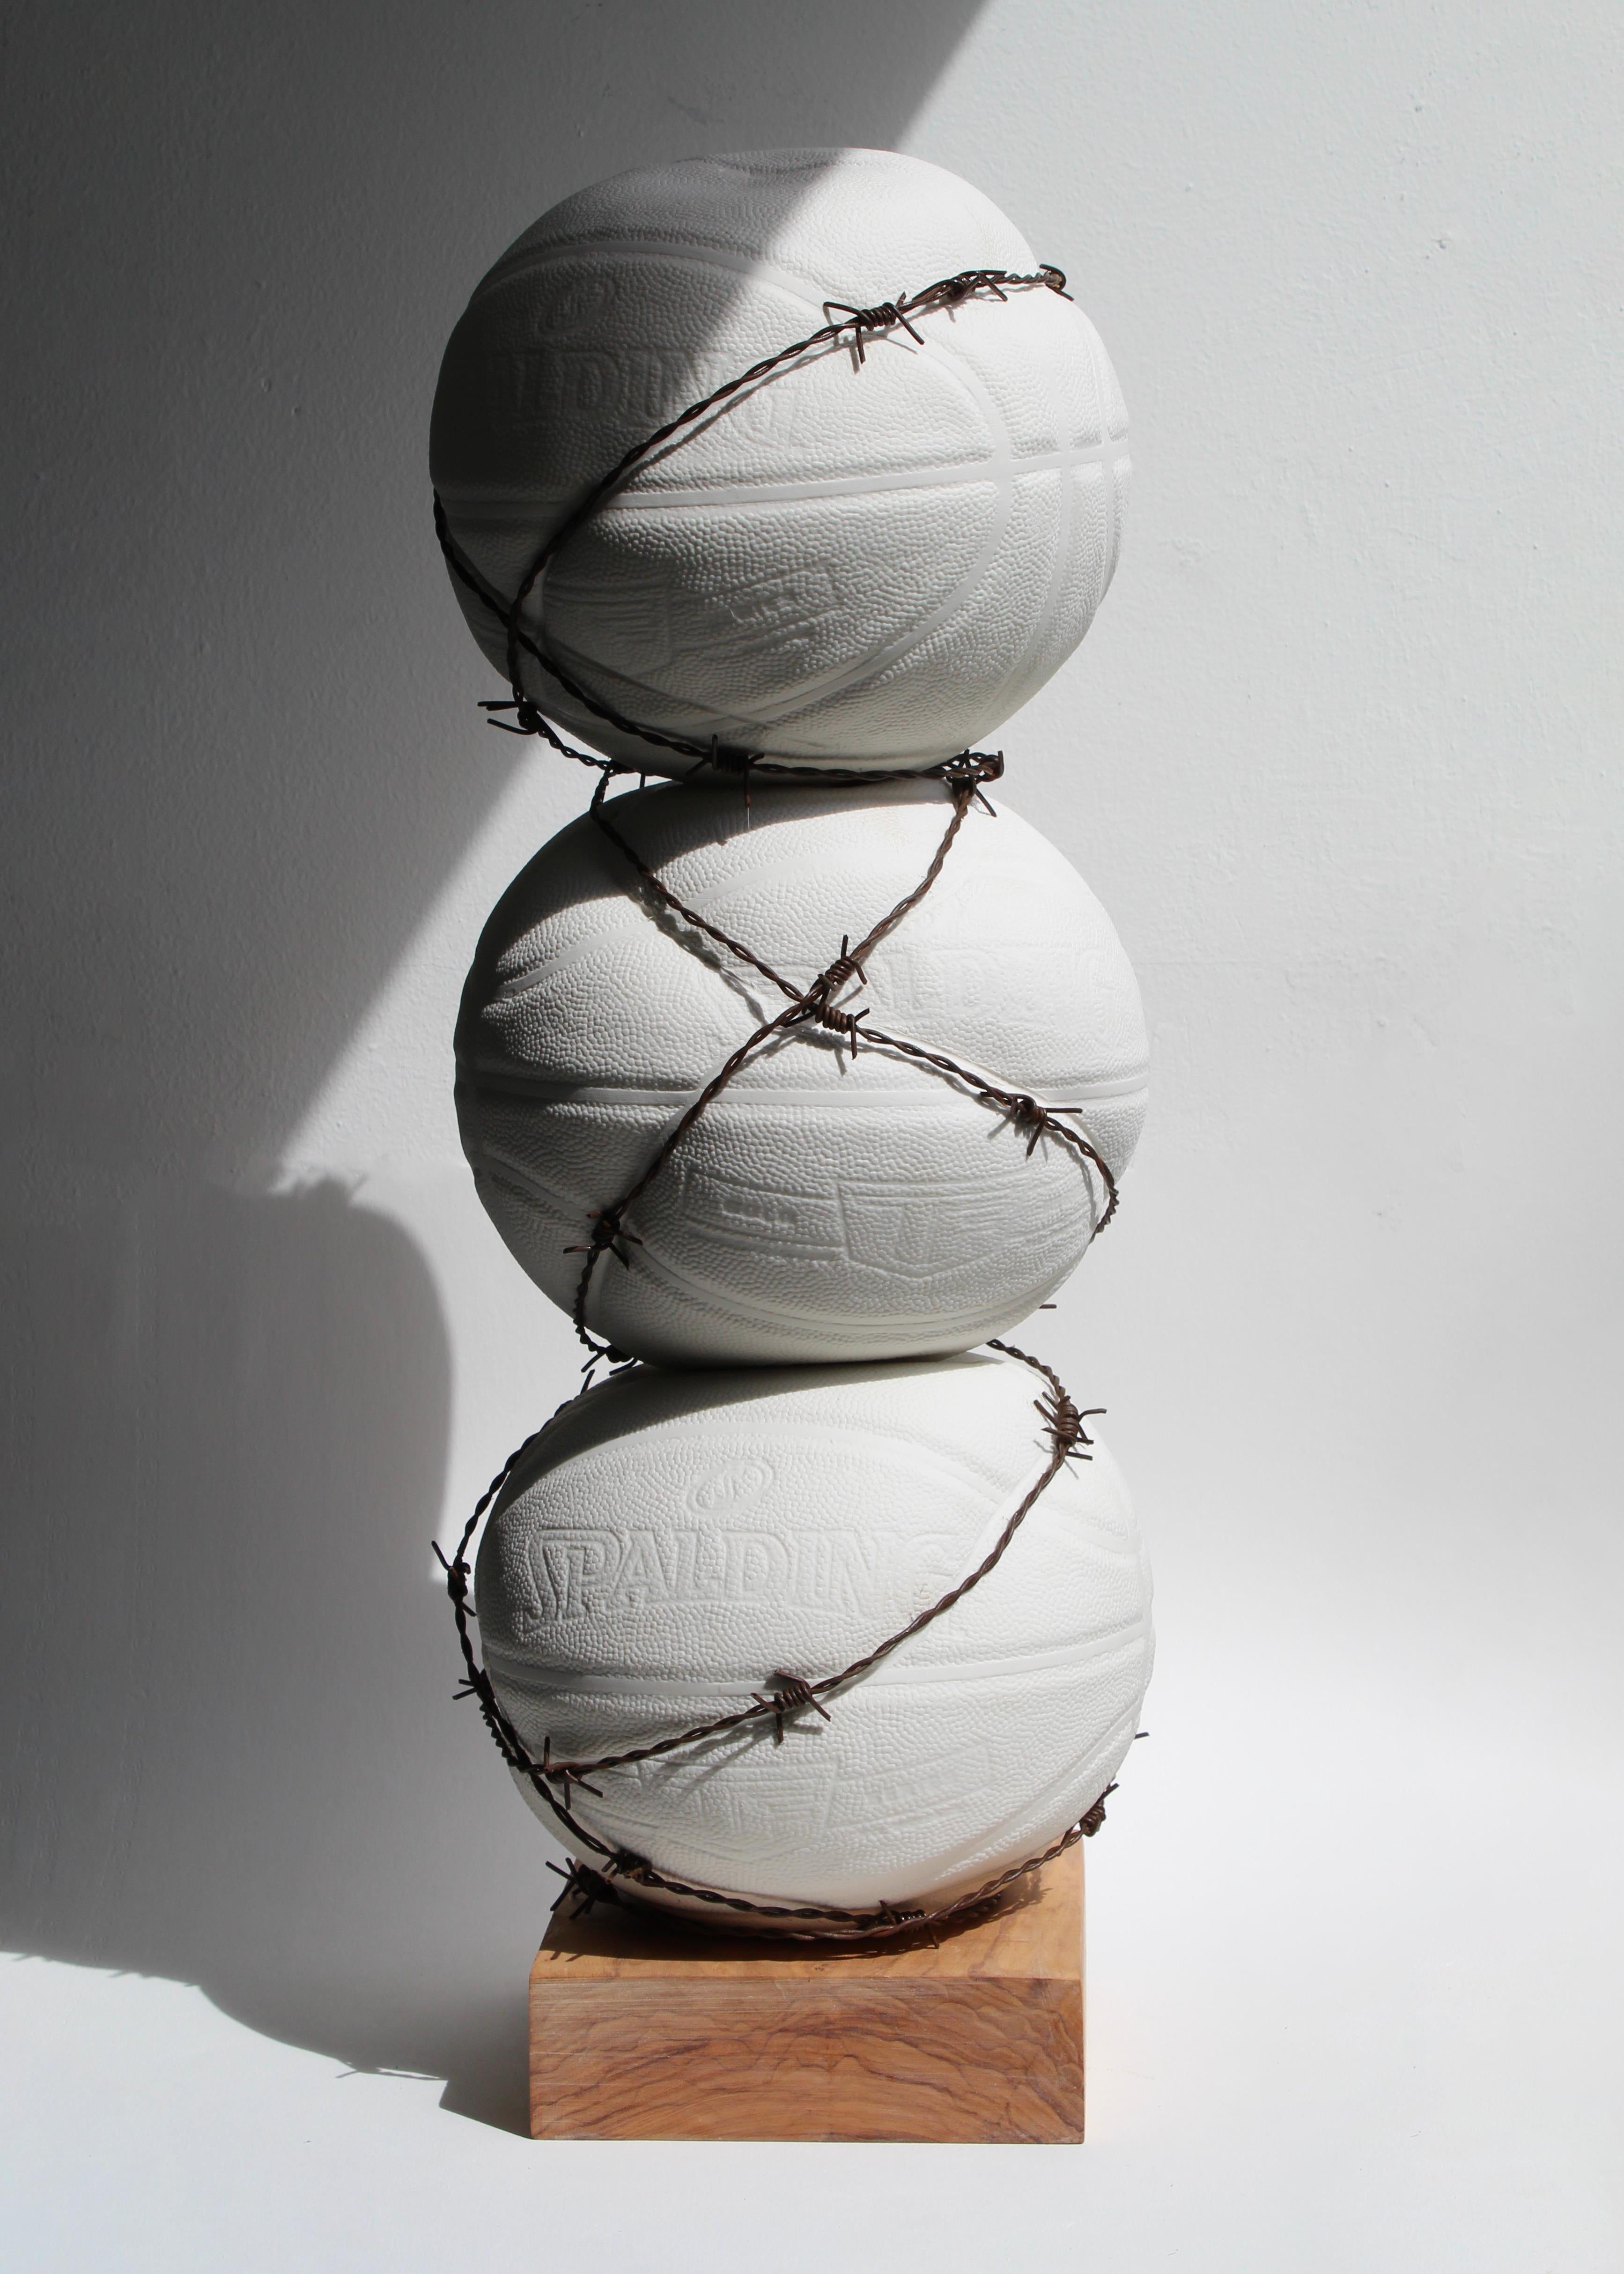 Limitierte Auflage von 12 Stück. 

Maxime Siau, 1993 in Südfrankreich geboren, ist ein Bildhauer und Künstler, dessen Werk ein ausgeprägtes Umweltbewusstsein verkörpert. Mit einer sorgfältigen Auswahl der Materialien und einer klaren Botschaft, die